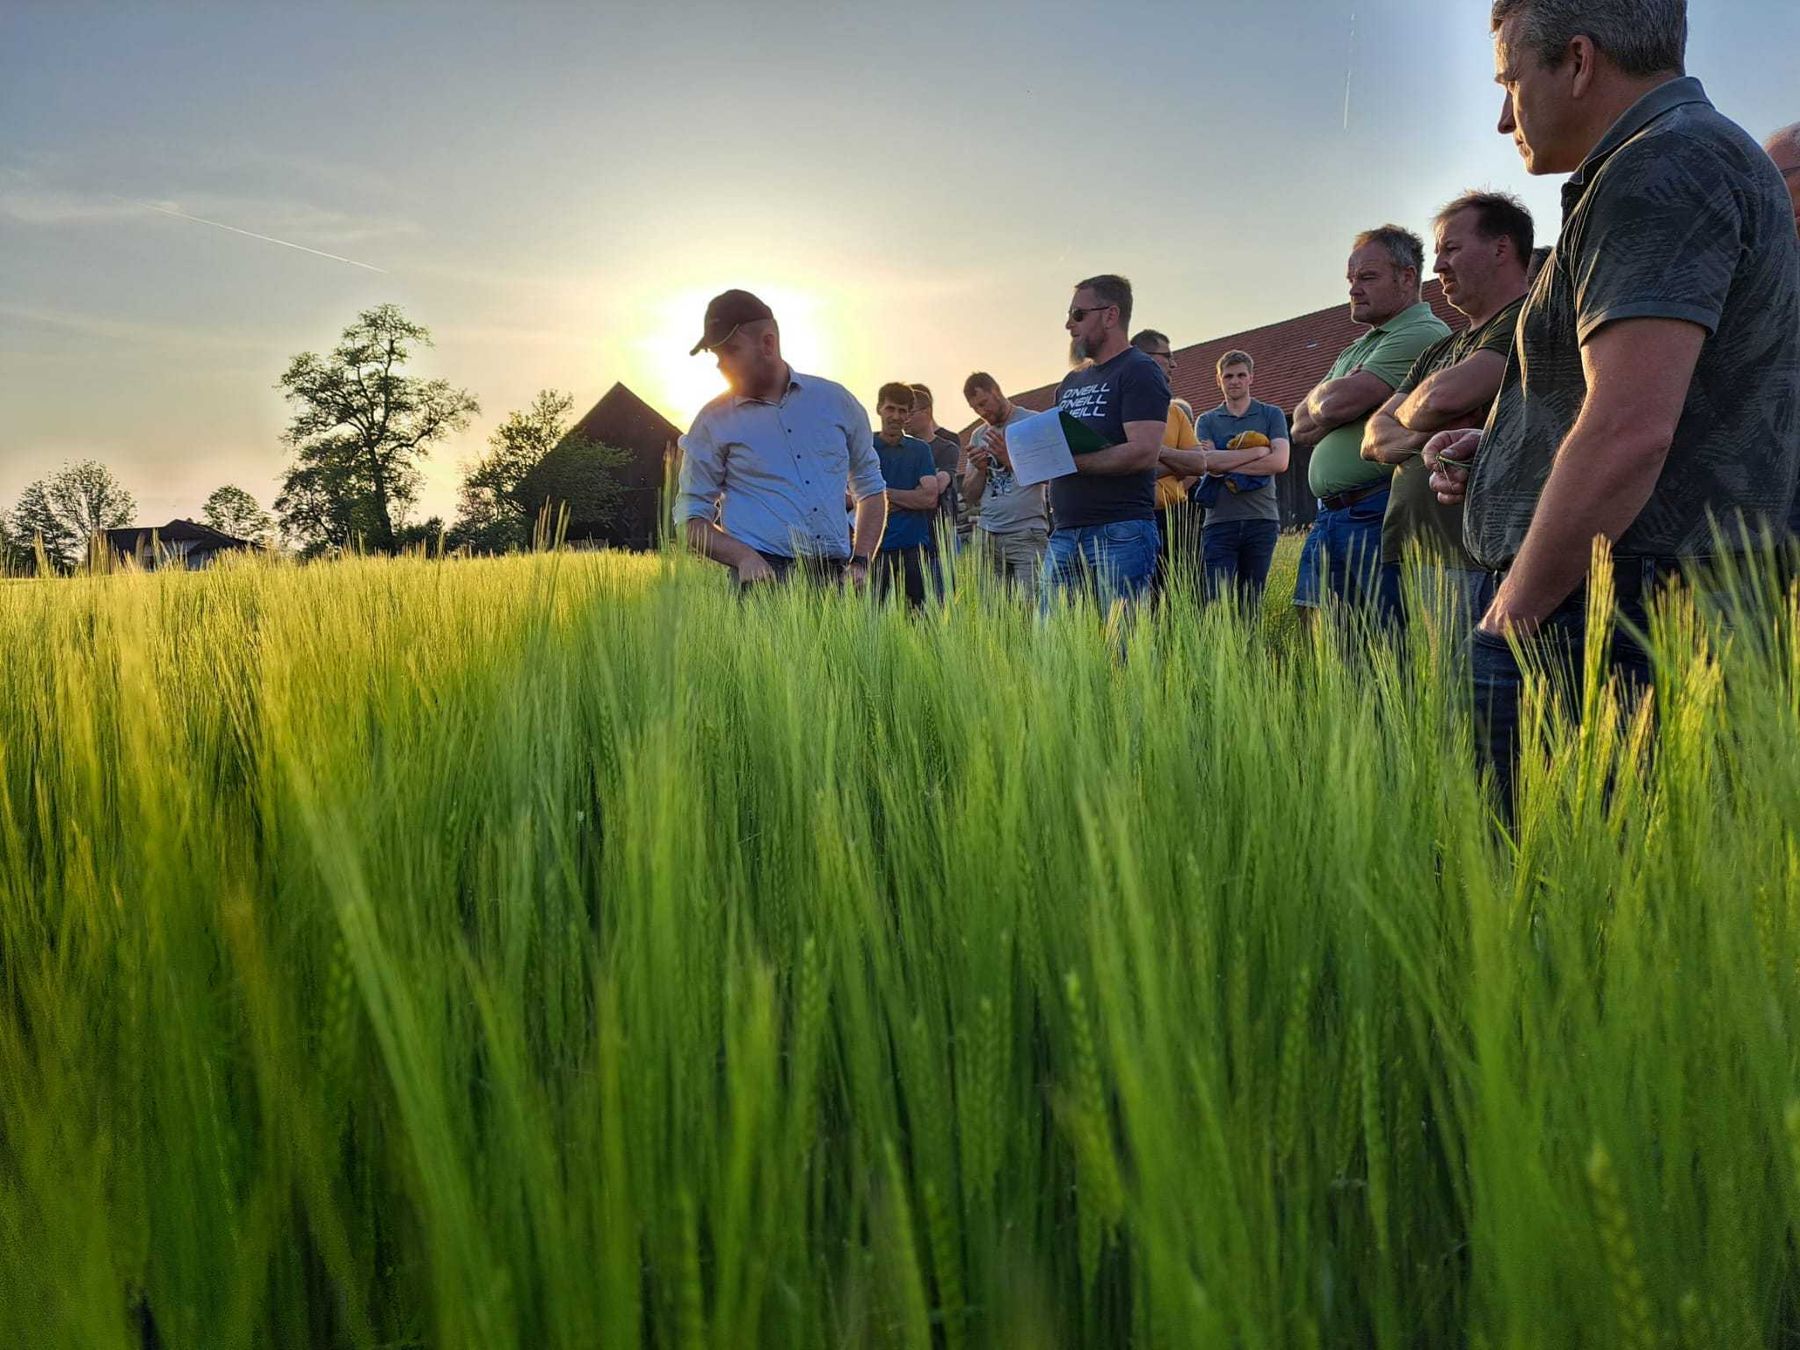 Gewässerschonende Strategien in Mais, Sojabohne, Weizen und Wintergerste waren heute die Diskussionspunkte bei der Feldbegehung in Pettenbach. Vielen Dank für das rege Interesse und für die spannenden Diskussionen. © BWSB